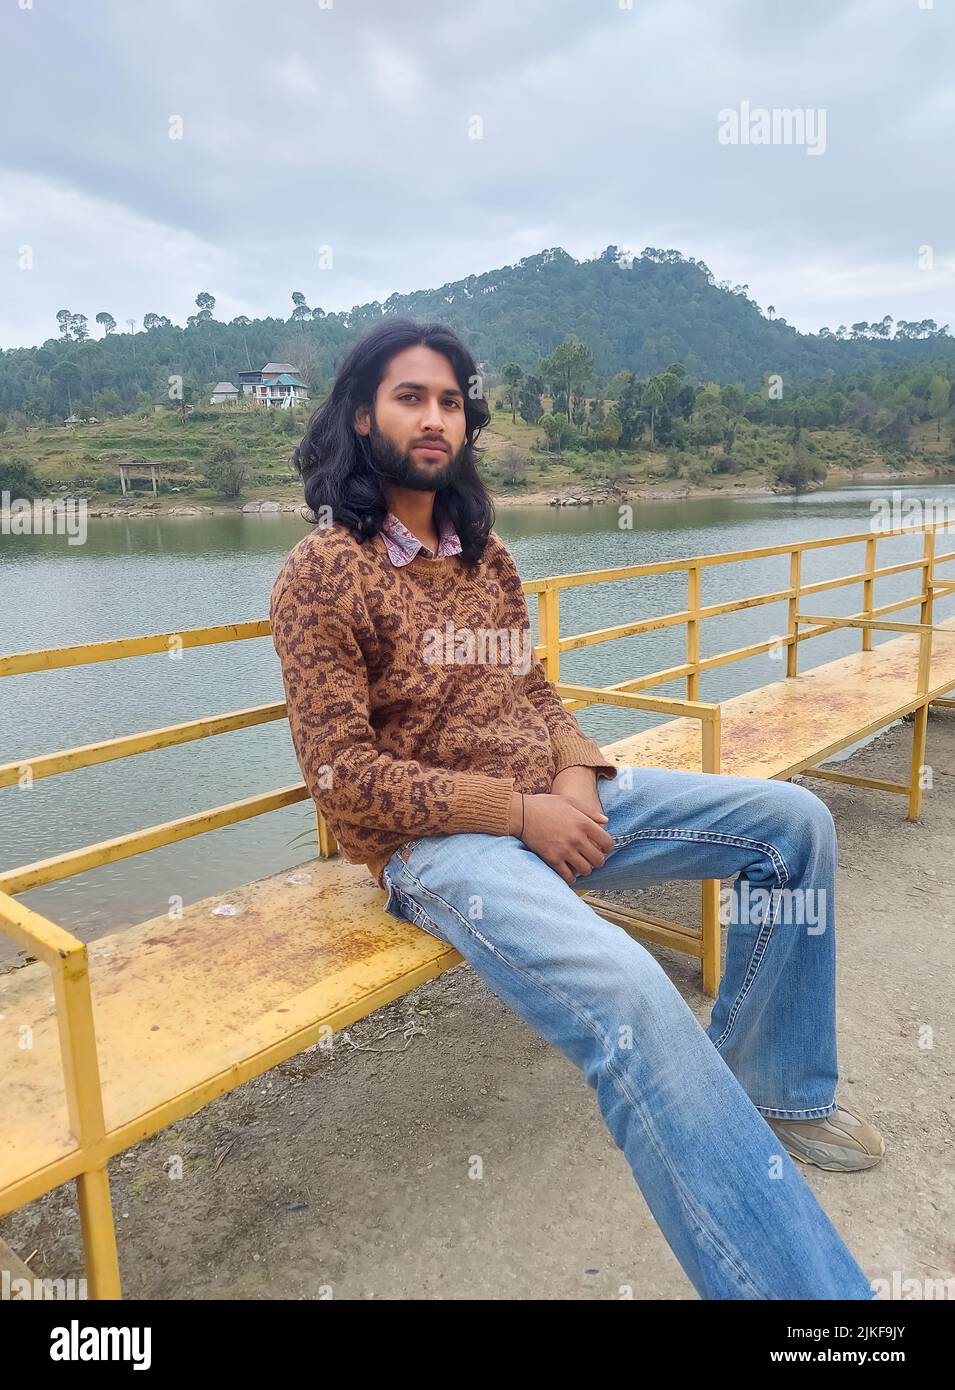 Un giovane indiano dall'aspetto buono con capelli lunghi e barba che guarda la macchina fotografica mentre si siede sulla panca accanto al lago Foto Stock